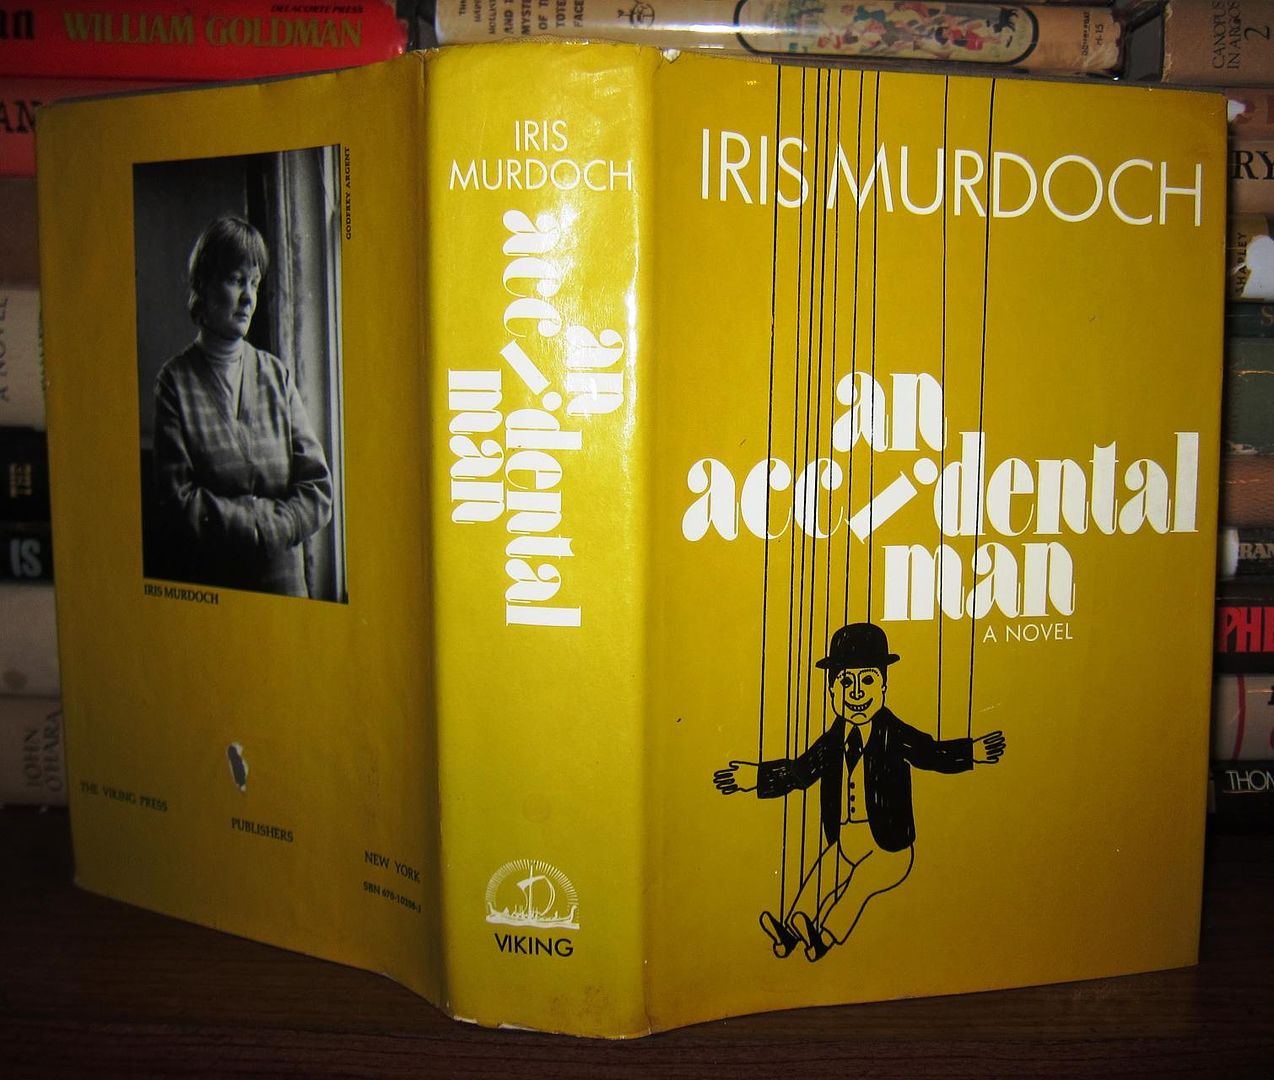 MURDOCH, IRIS - An Accidental Man